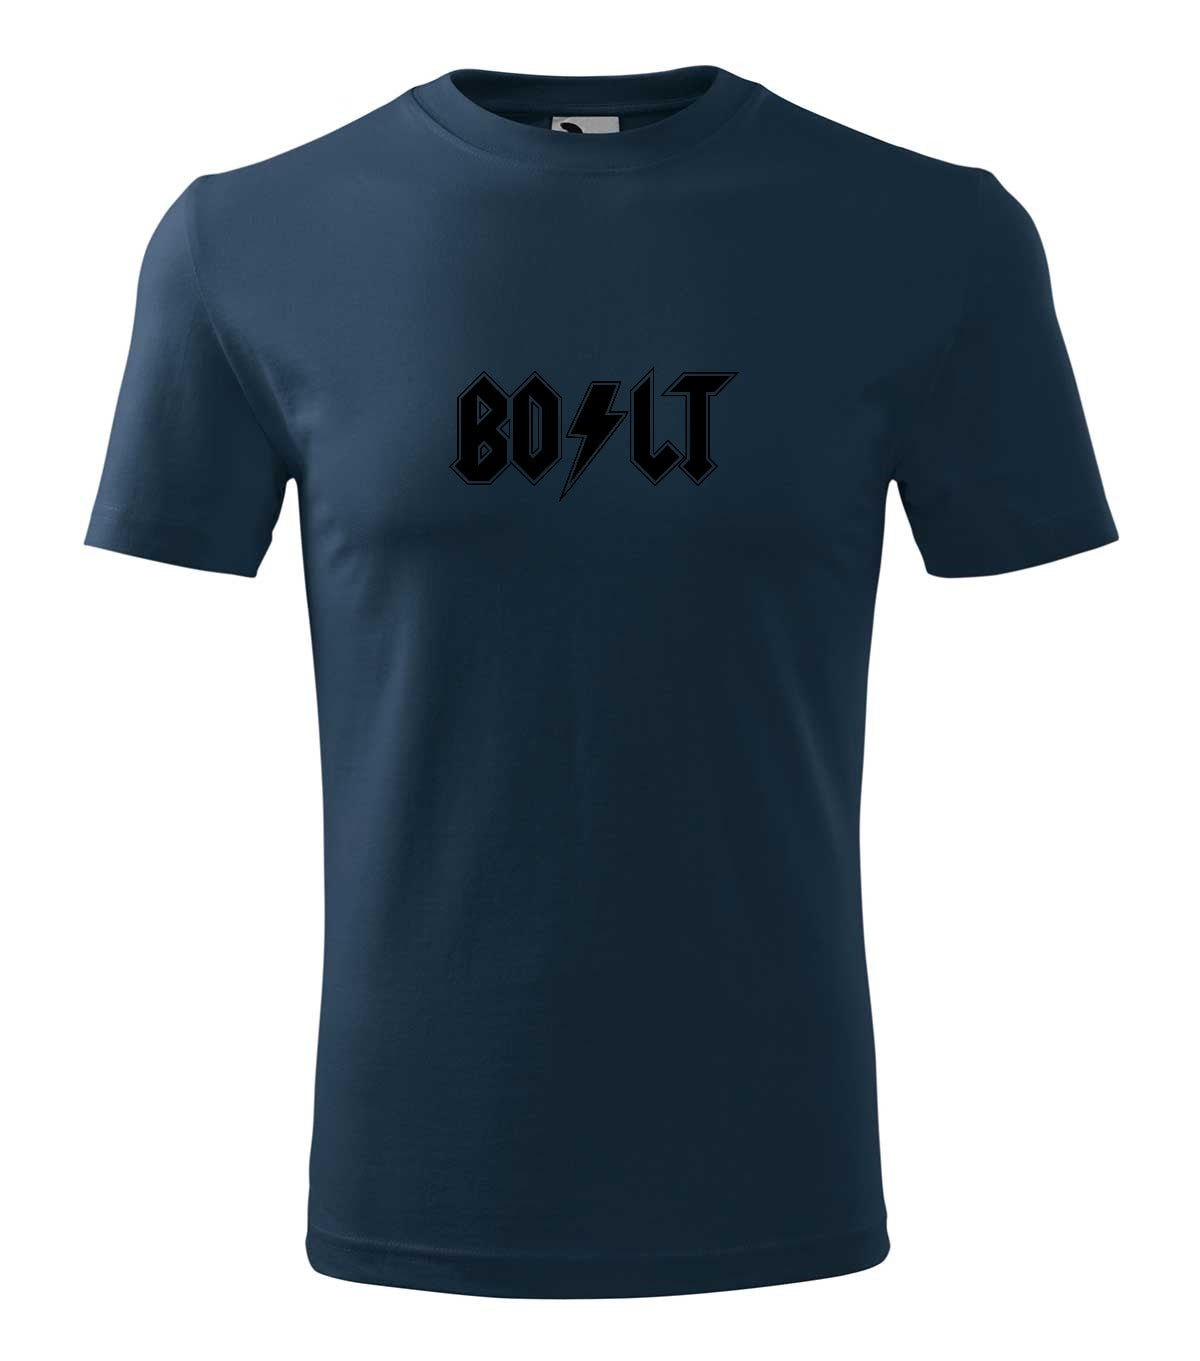 Bolt férfi póló